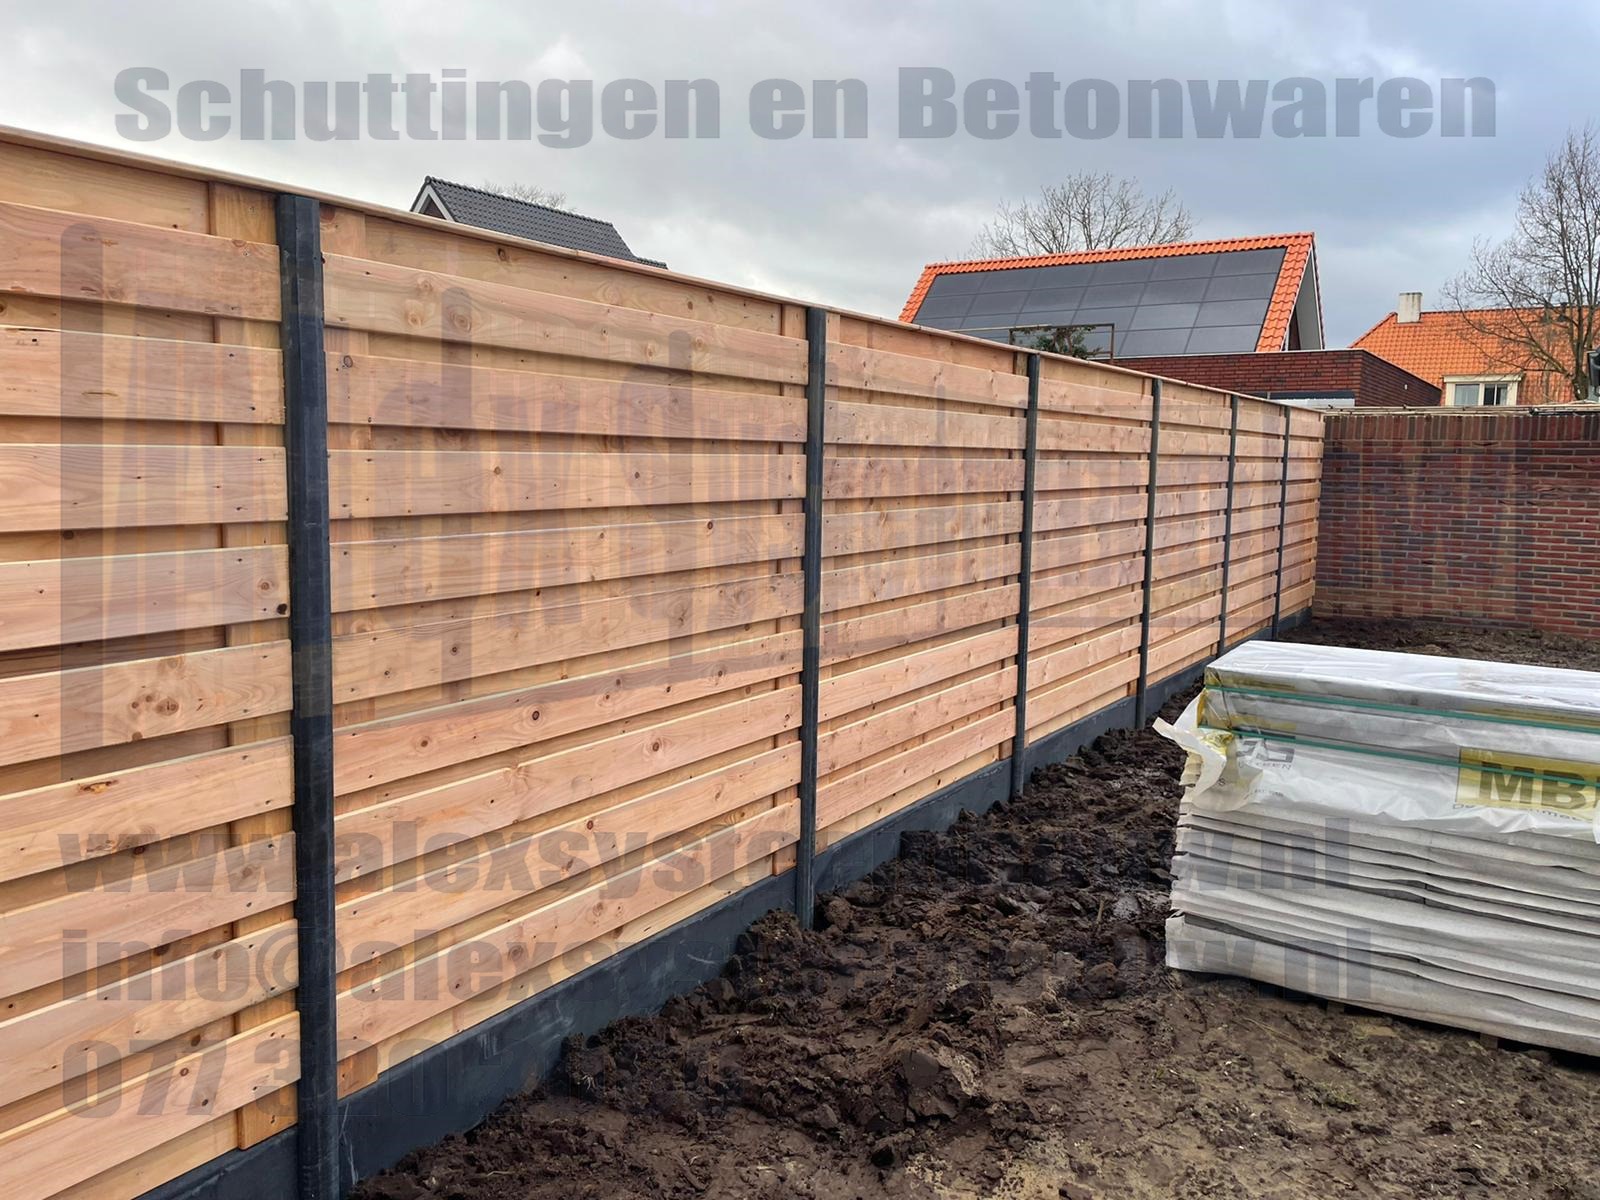 21 planks horizontale Red Class Wood tuinschermen i.c.m. antracieten beton elementen en betonpalen voorzien van vlakke kop